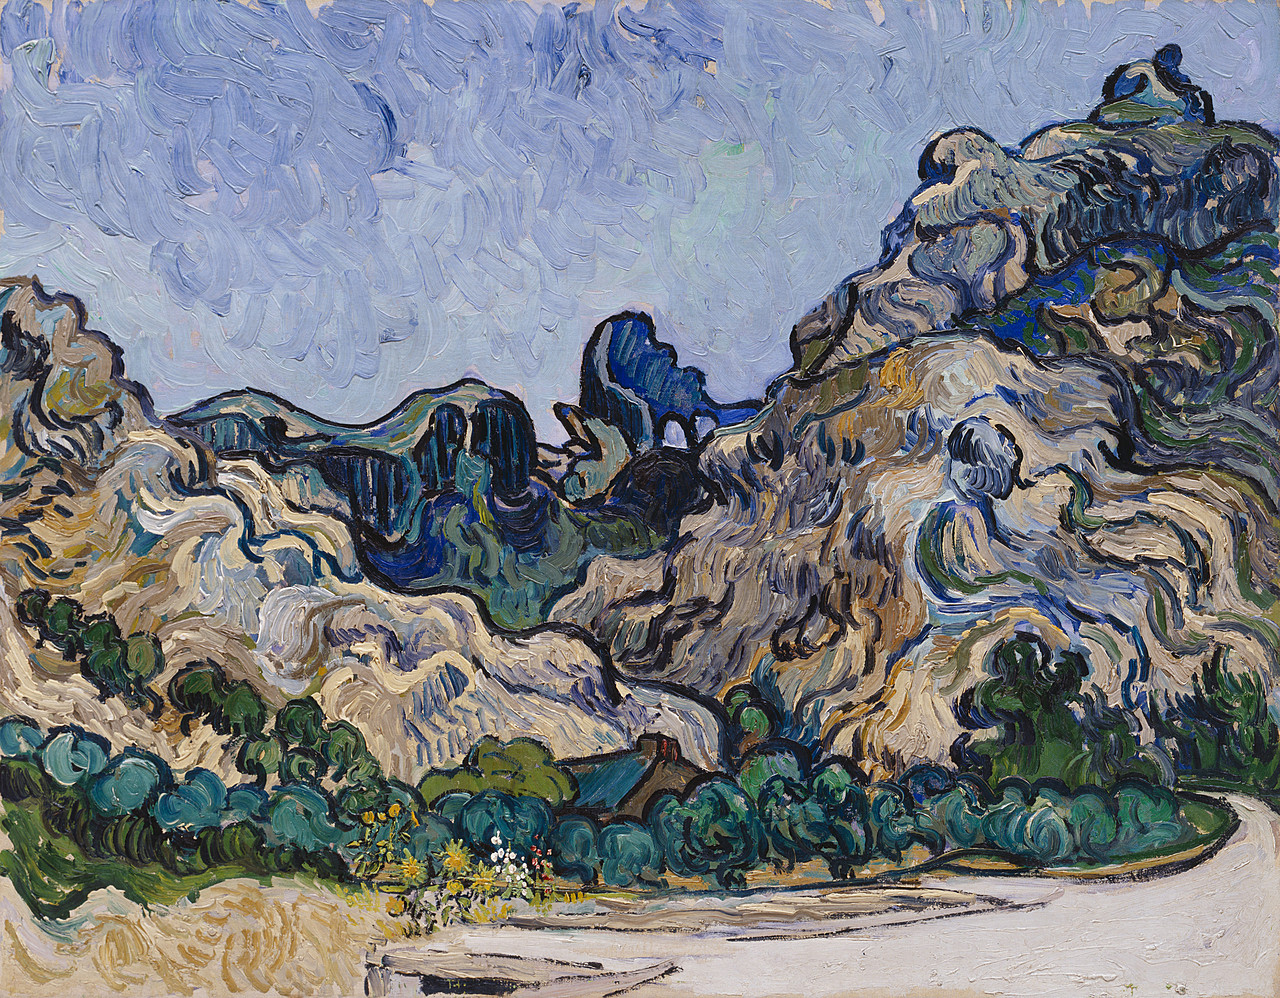 Vincent van Gogh, Mountains at Saint-Rémy, Saint-Rémy-de-Provence, July 1889. Oil on canvas, 28 11/16 x 36 1/4 inches (72.8 x 92 cm)